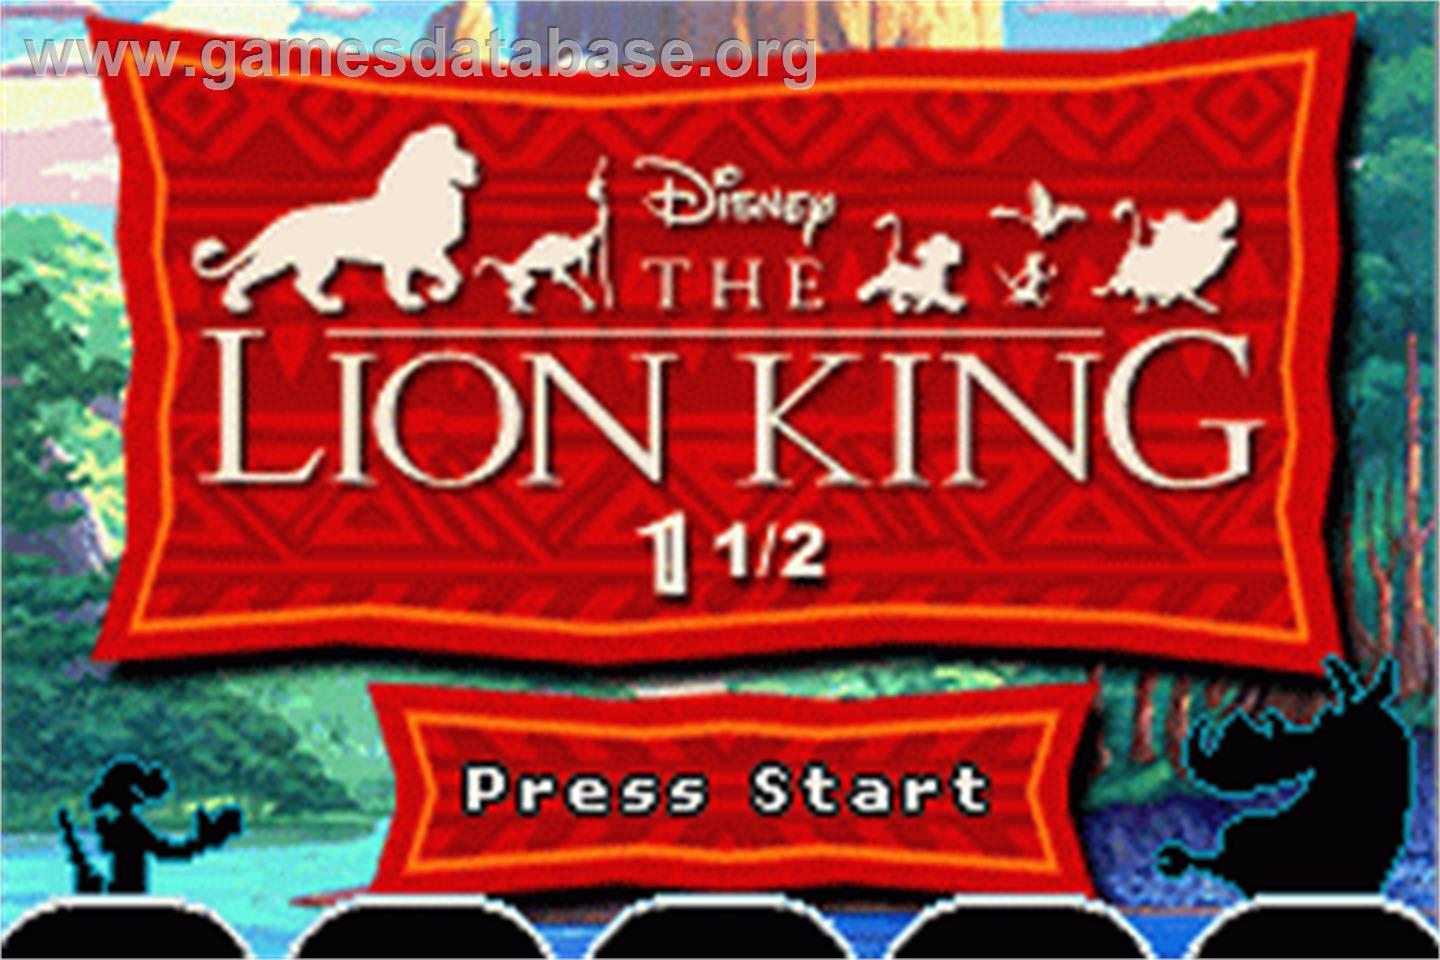 Lion King 1 ½ - Nintendo Game Boy Advance - Artwork - Title Screen